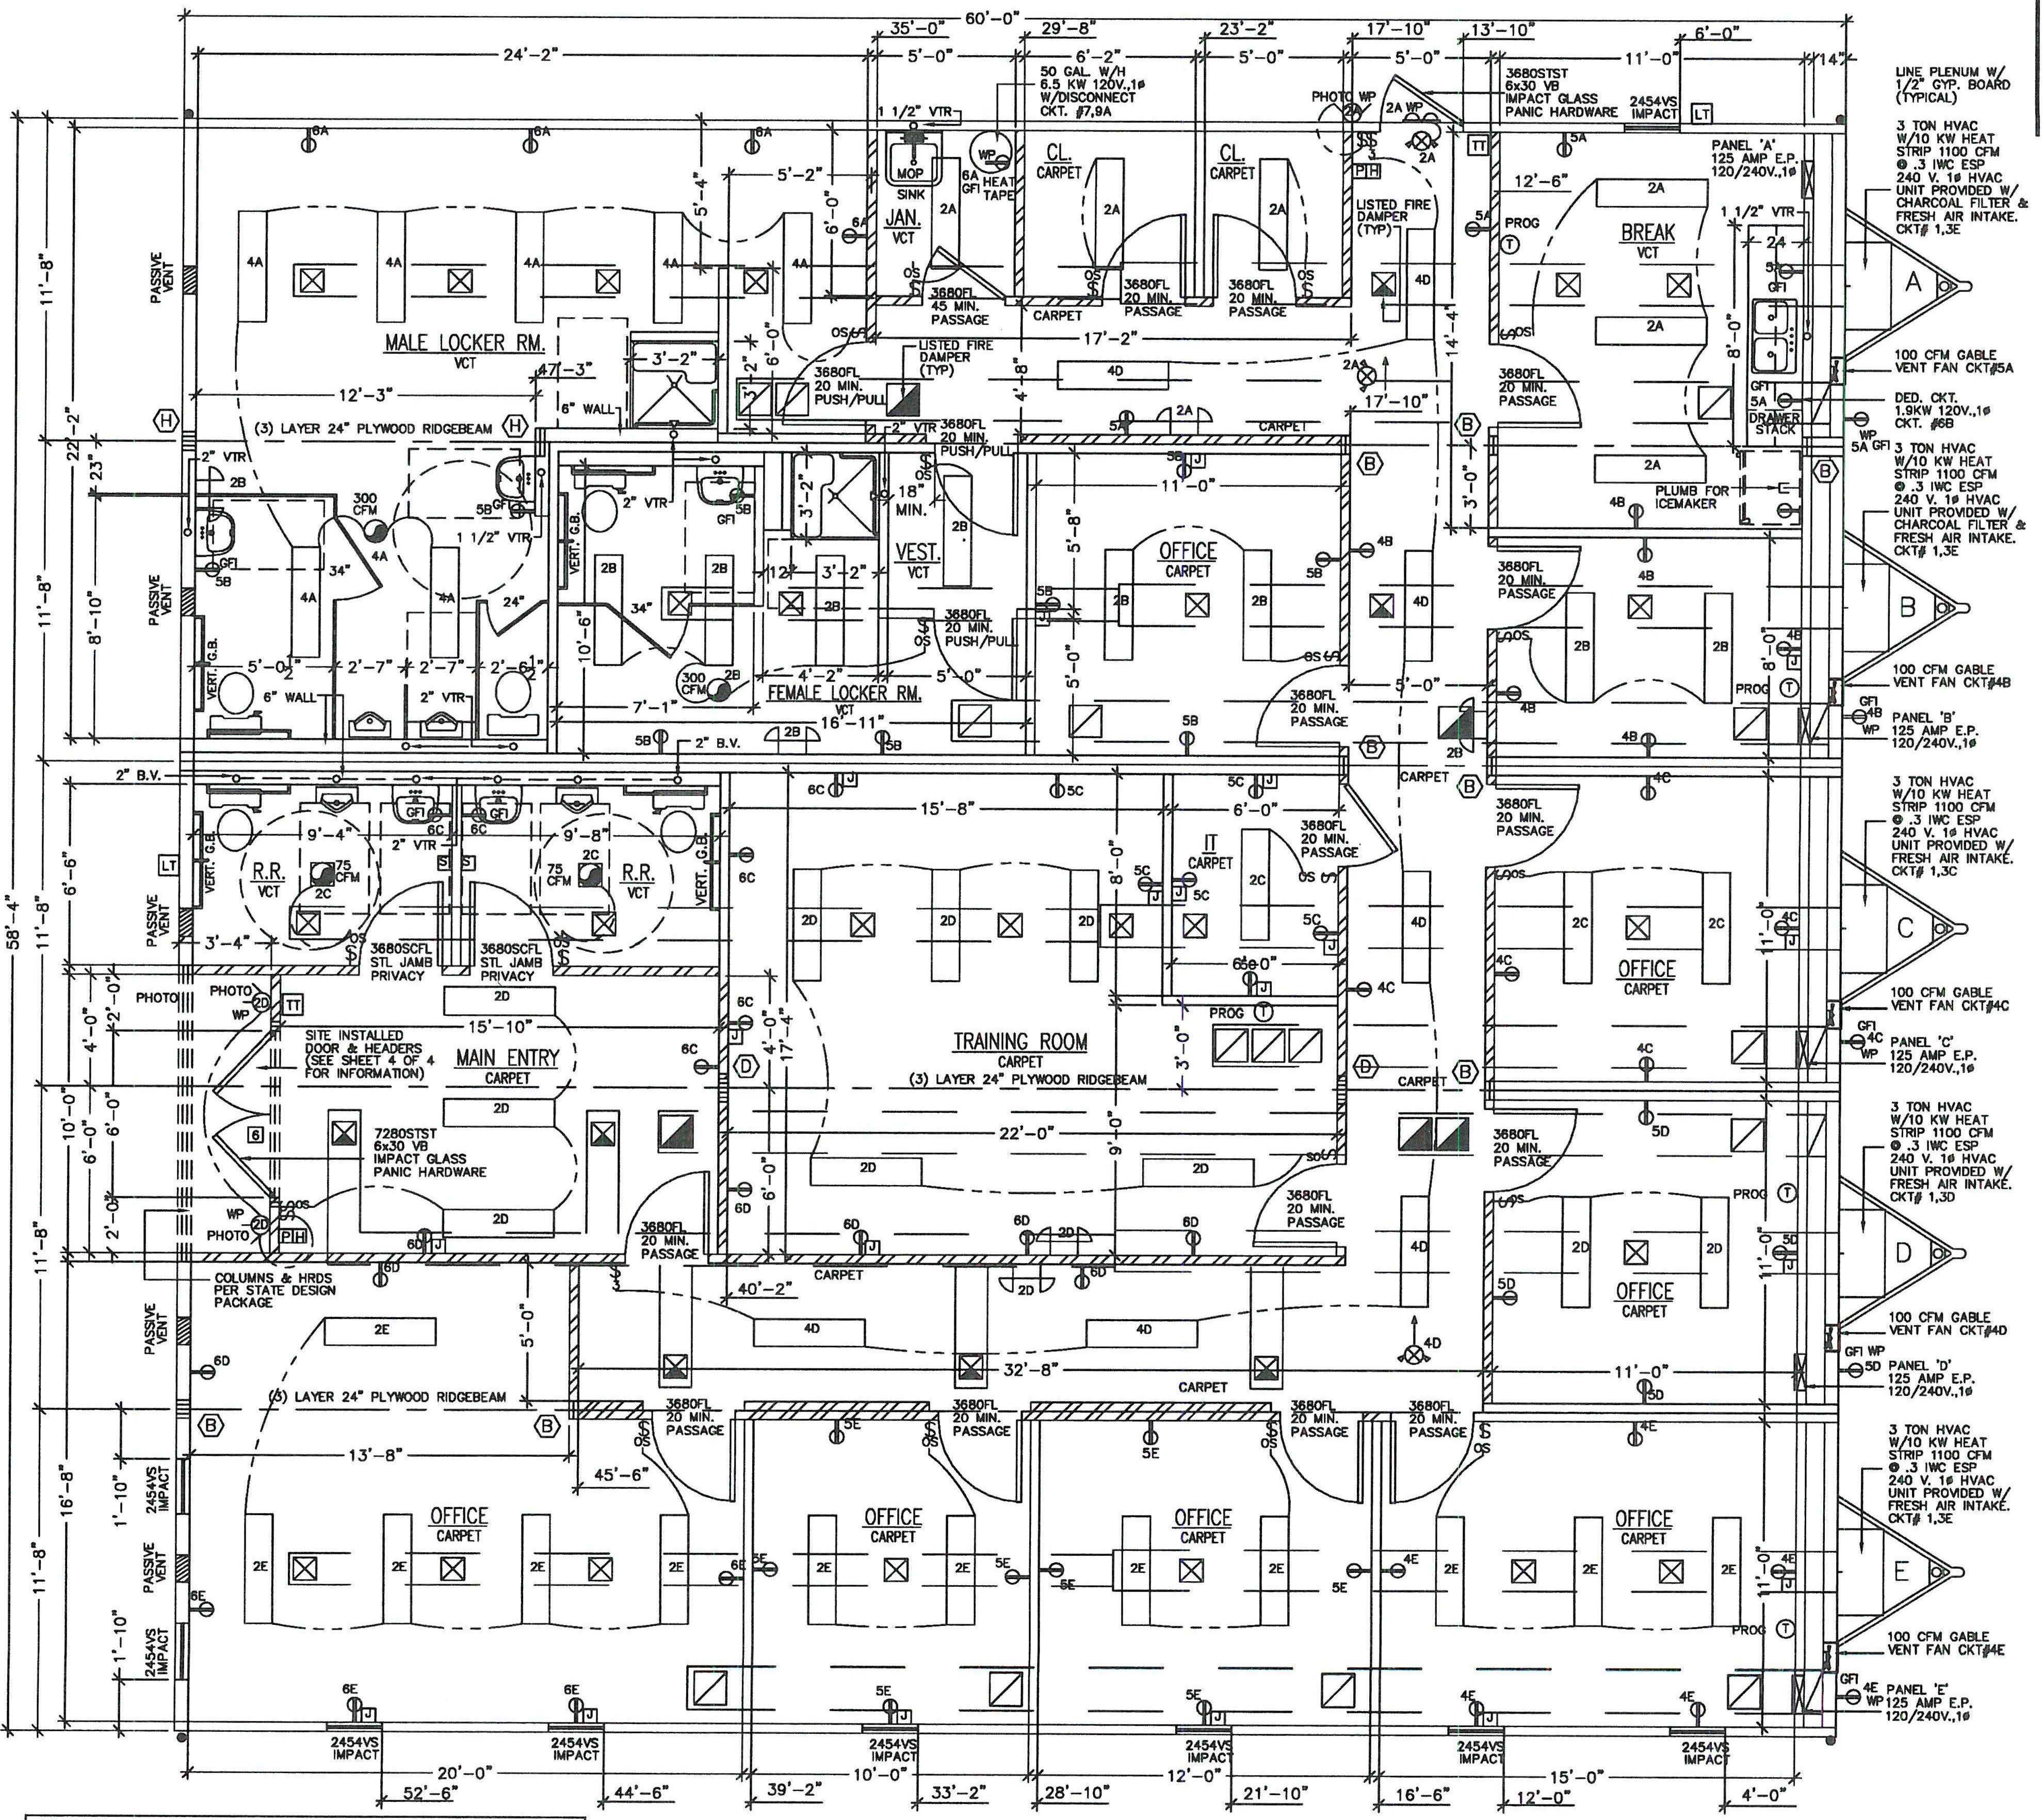 Floor plan of 60' x 60' modular complex